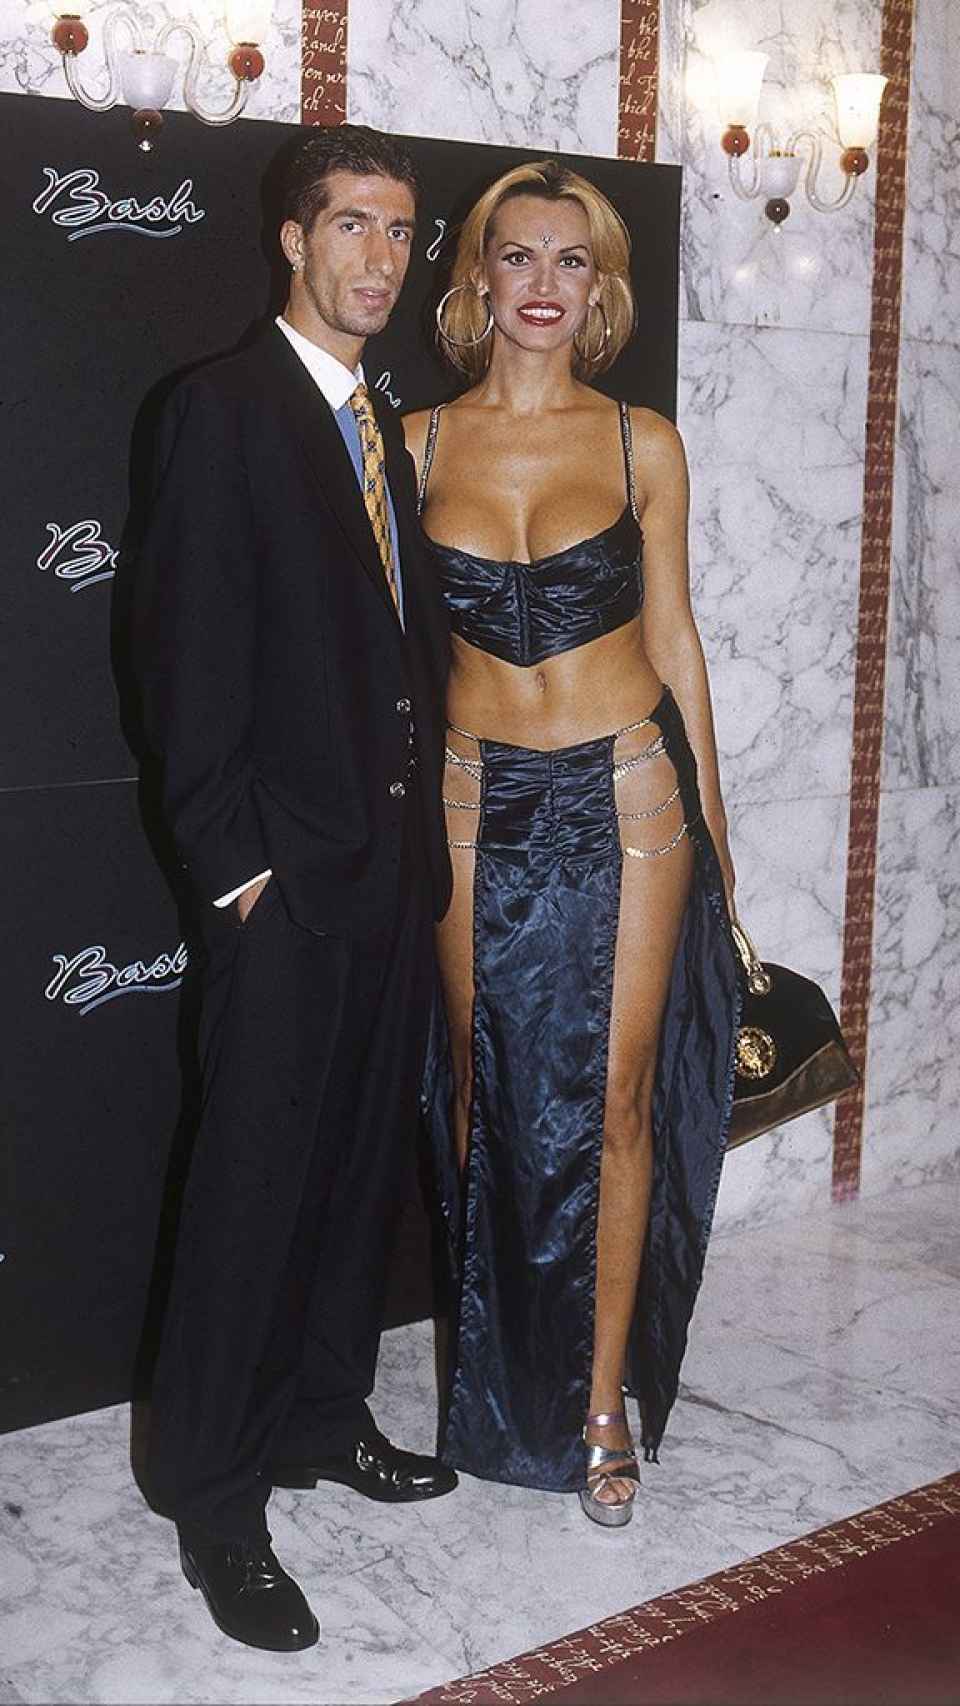 Cristina La Veneno y Andrea Petruzzelli en un evento juntos a finales de los 90.